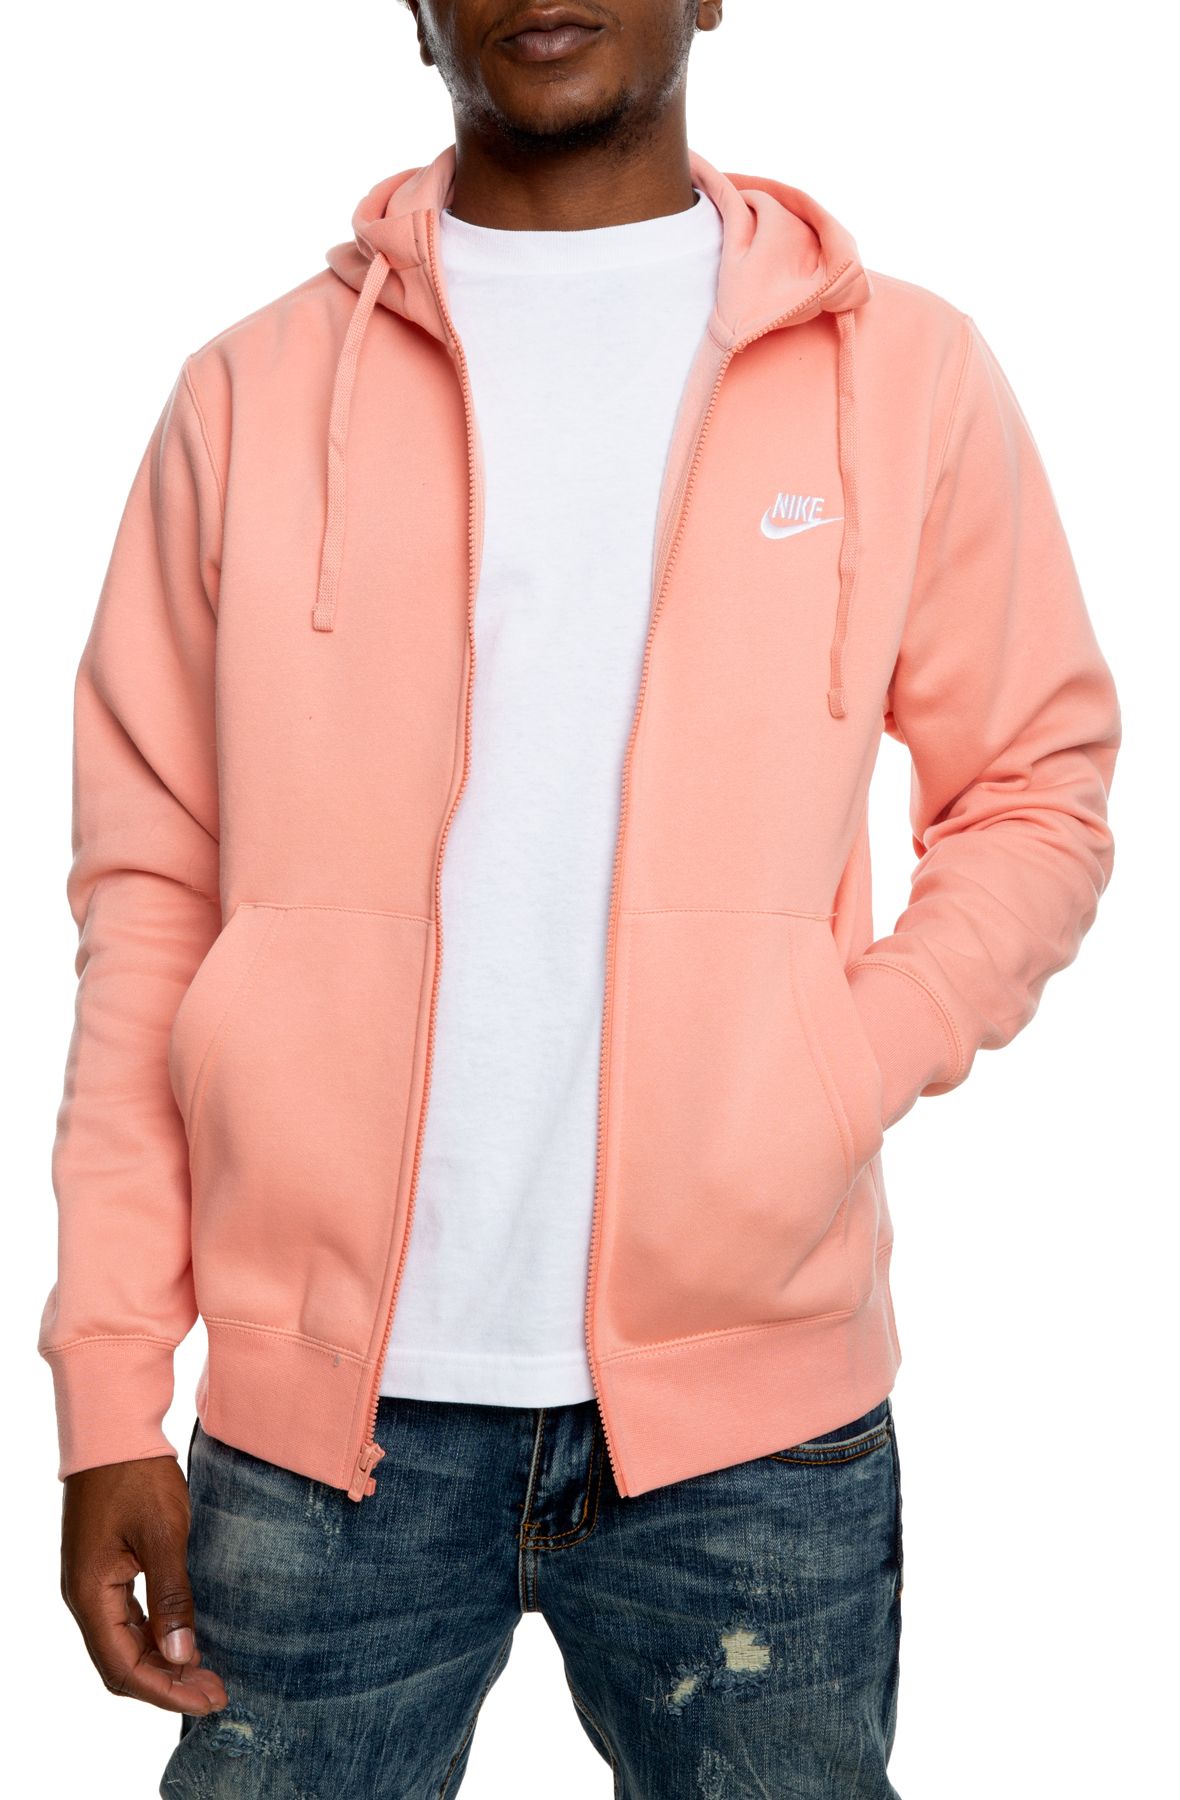 pink nike zip up hoodie mens